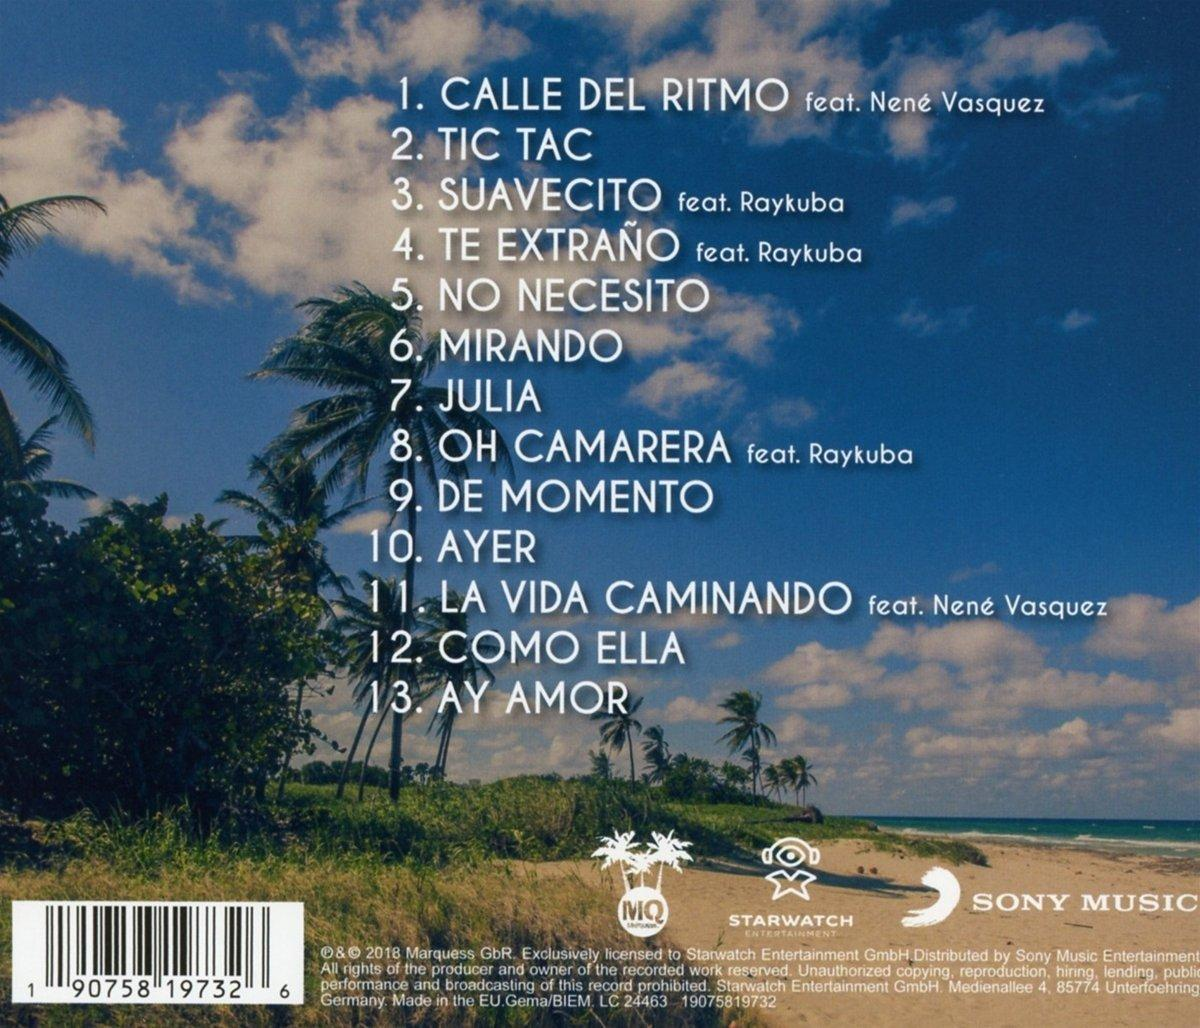 (CD) - Marquess - Movimiento En